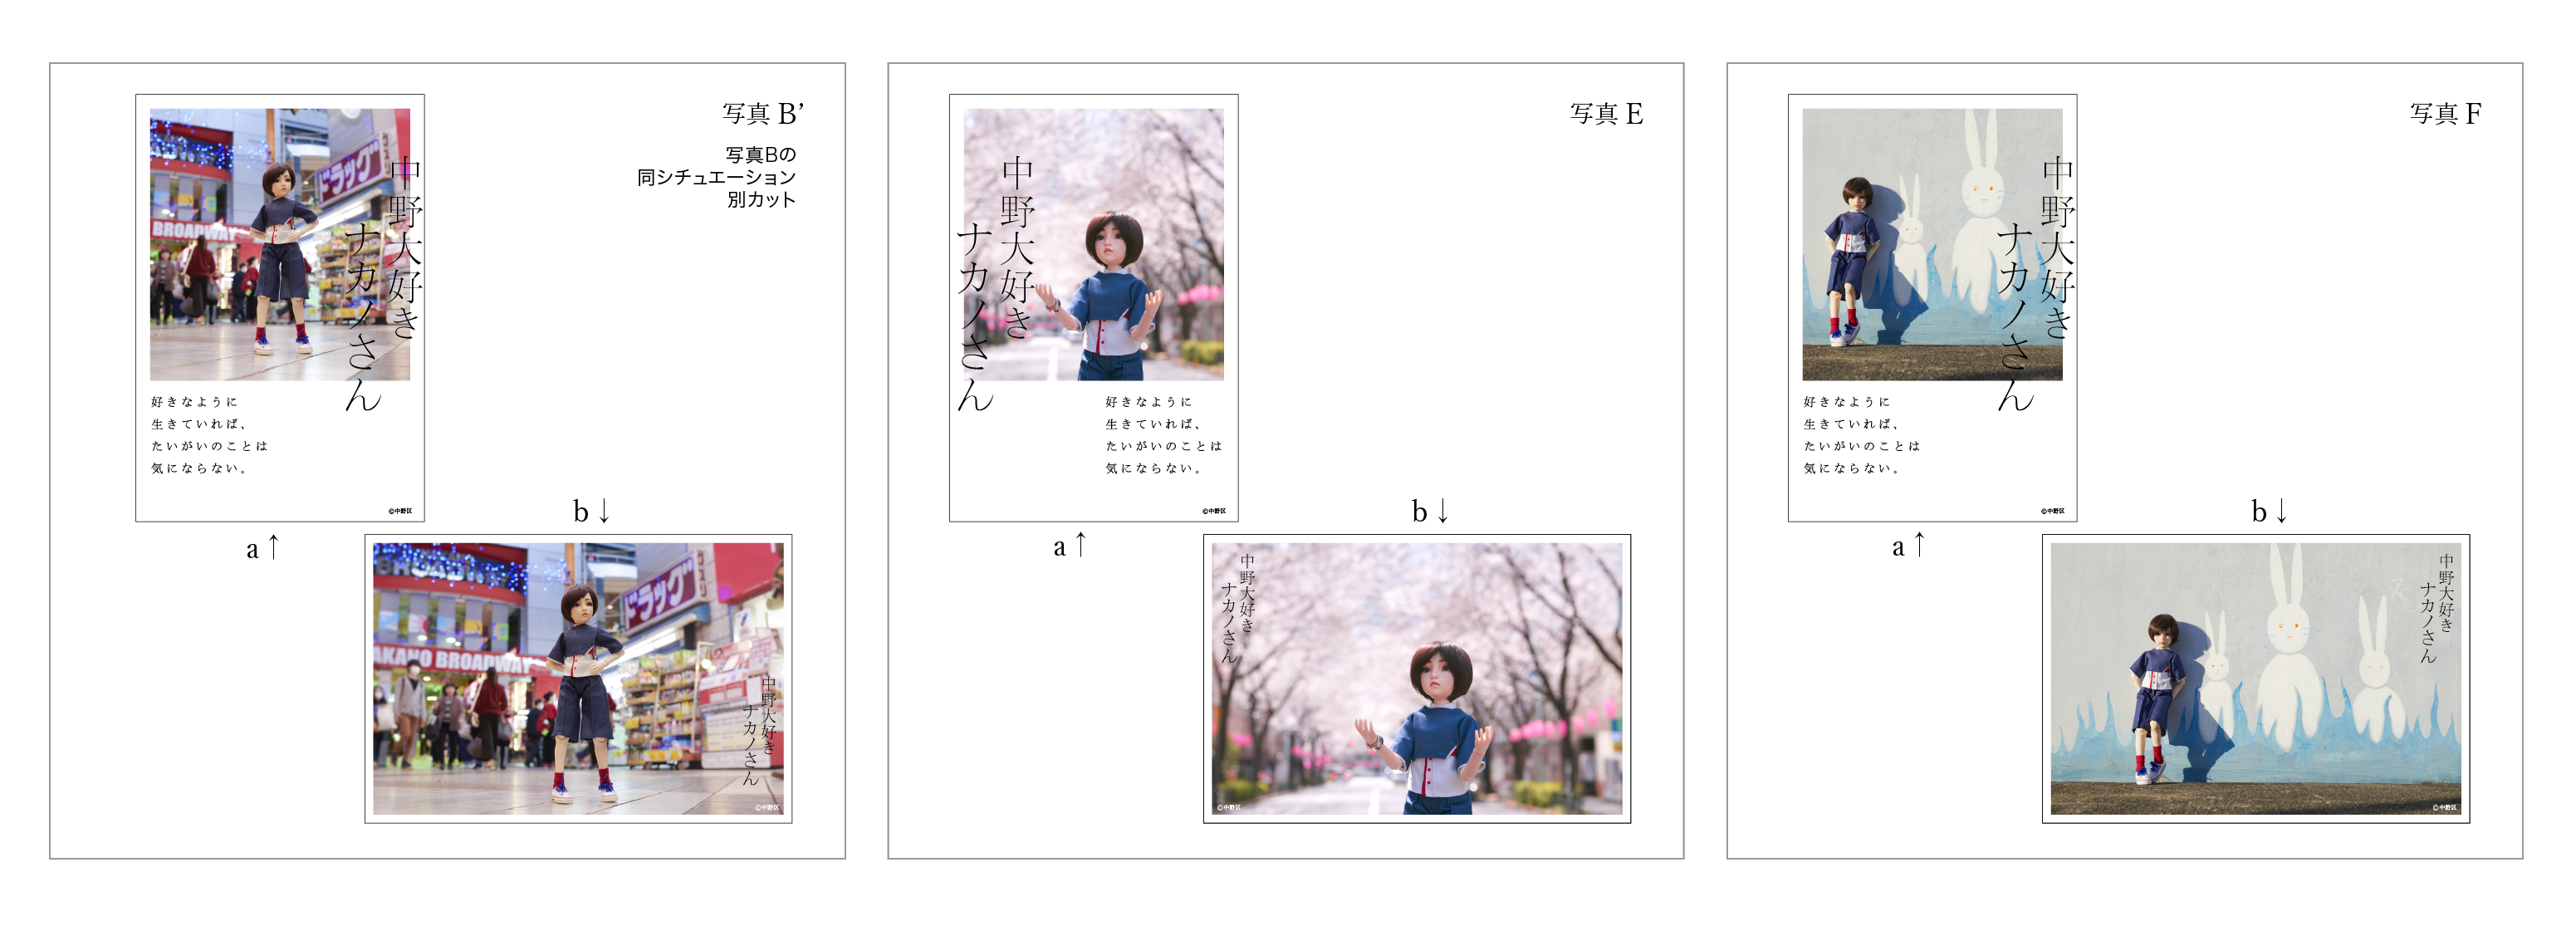 ナカノさんポストカードデザイン投票開催中 →